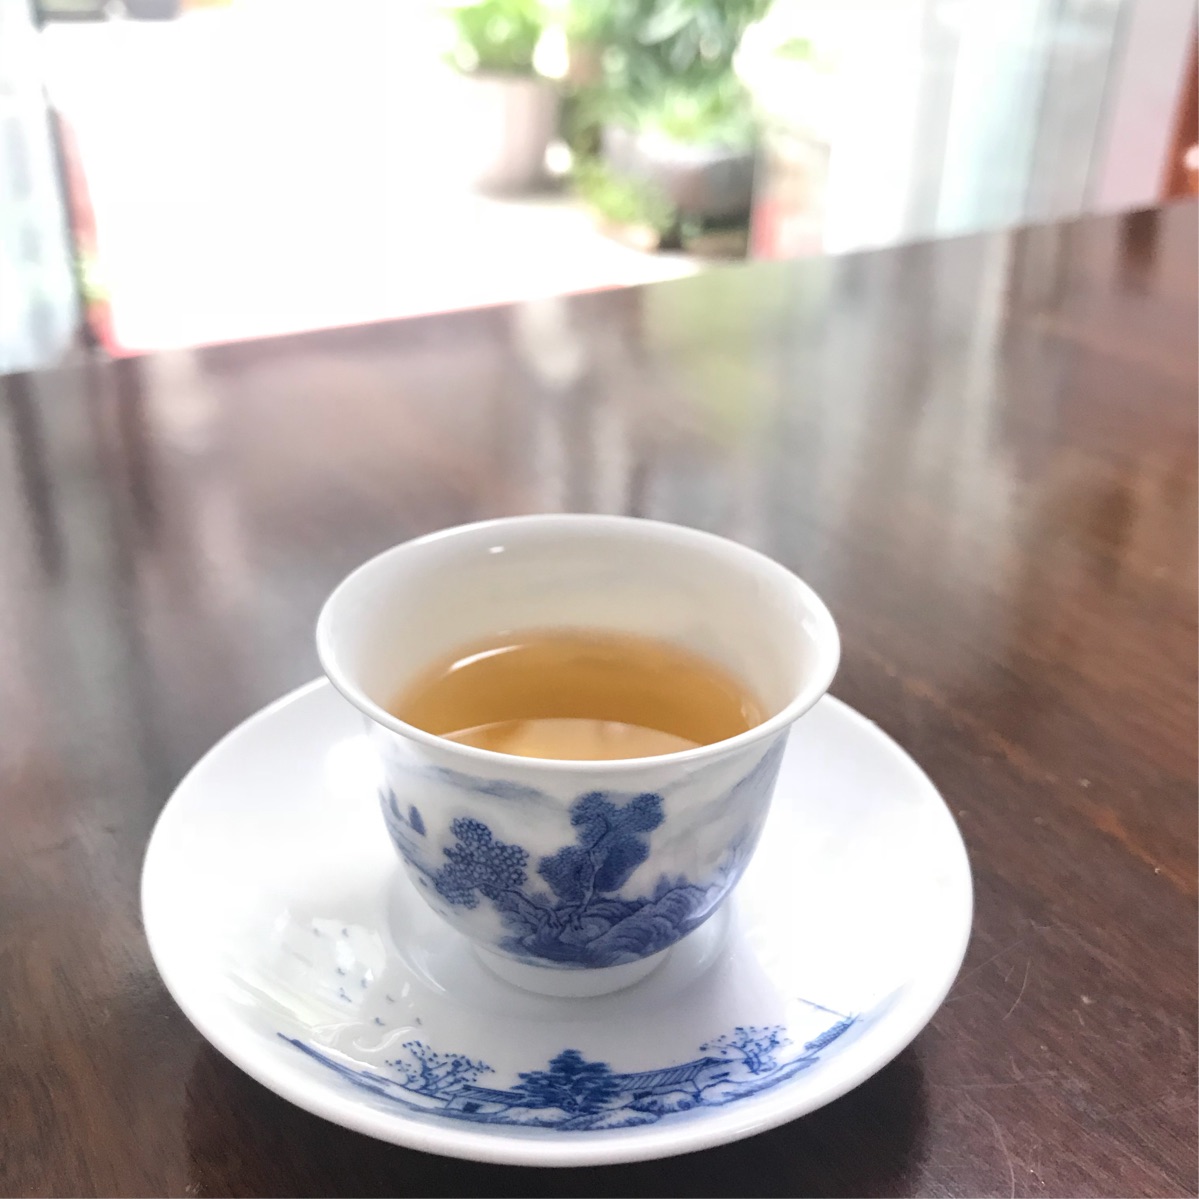 太平猴魁茶的茶叶,那么和作用是什么呢？